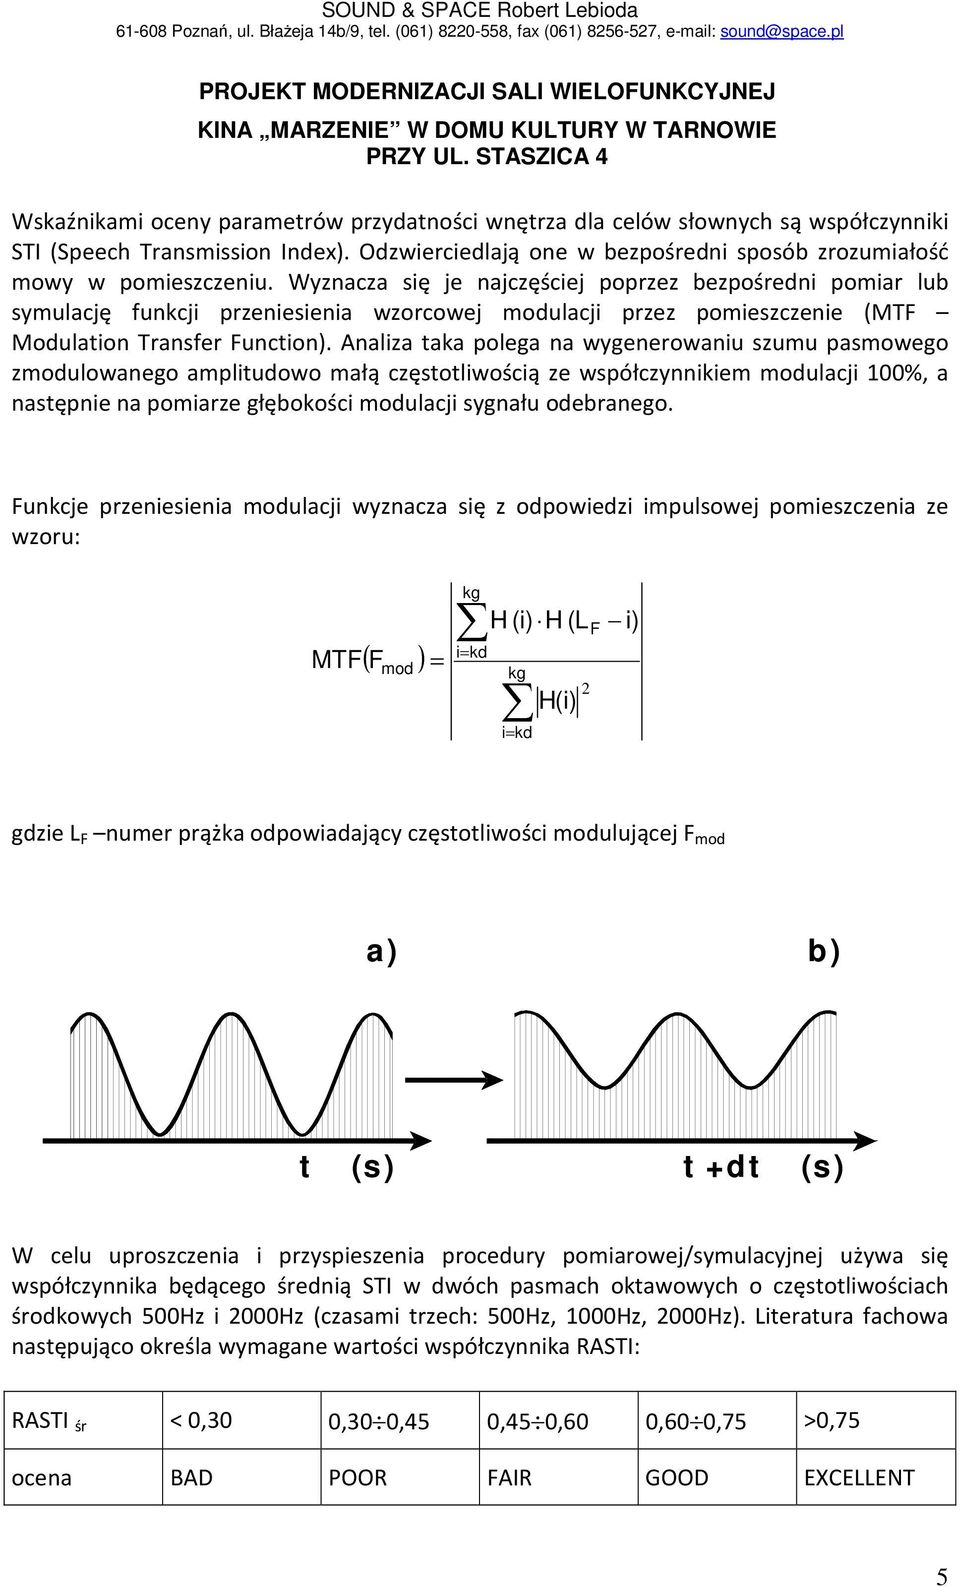 Analiza taka polega na wygenerowaniu szumu pasmowego zmodulowanego amplitudowo małą częstotliwością ze współczynnikiem modulacji 100%, a następnie na pomiarze głębokości modulacji sygnału odebranego.